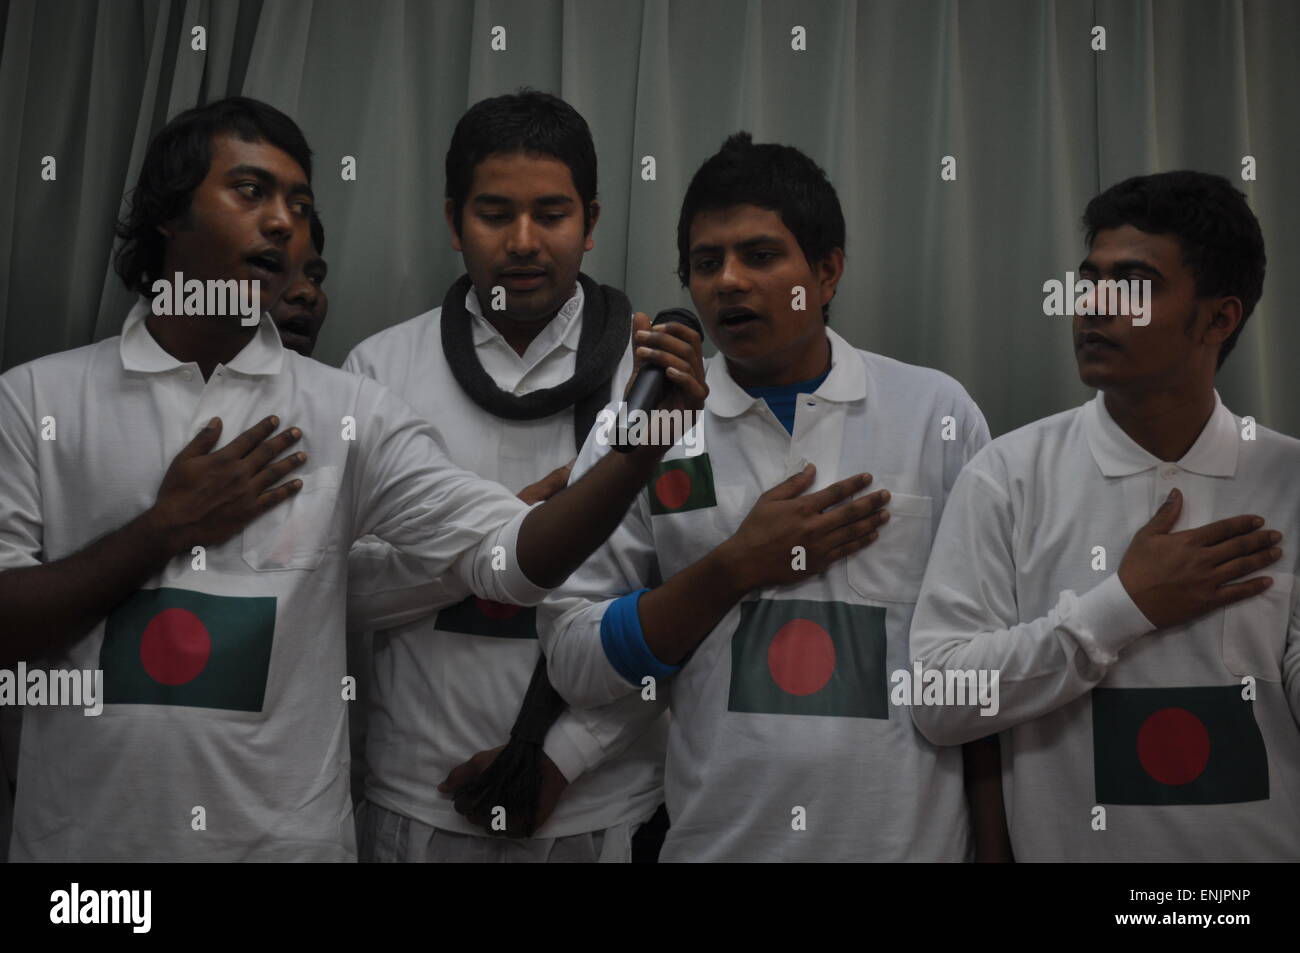 Naha, Okinawa, Japan: choir of Bangladeshi students singing at a Japanese school Stock Photo